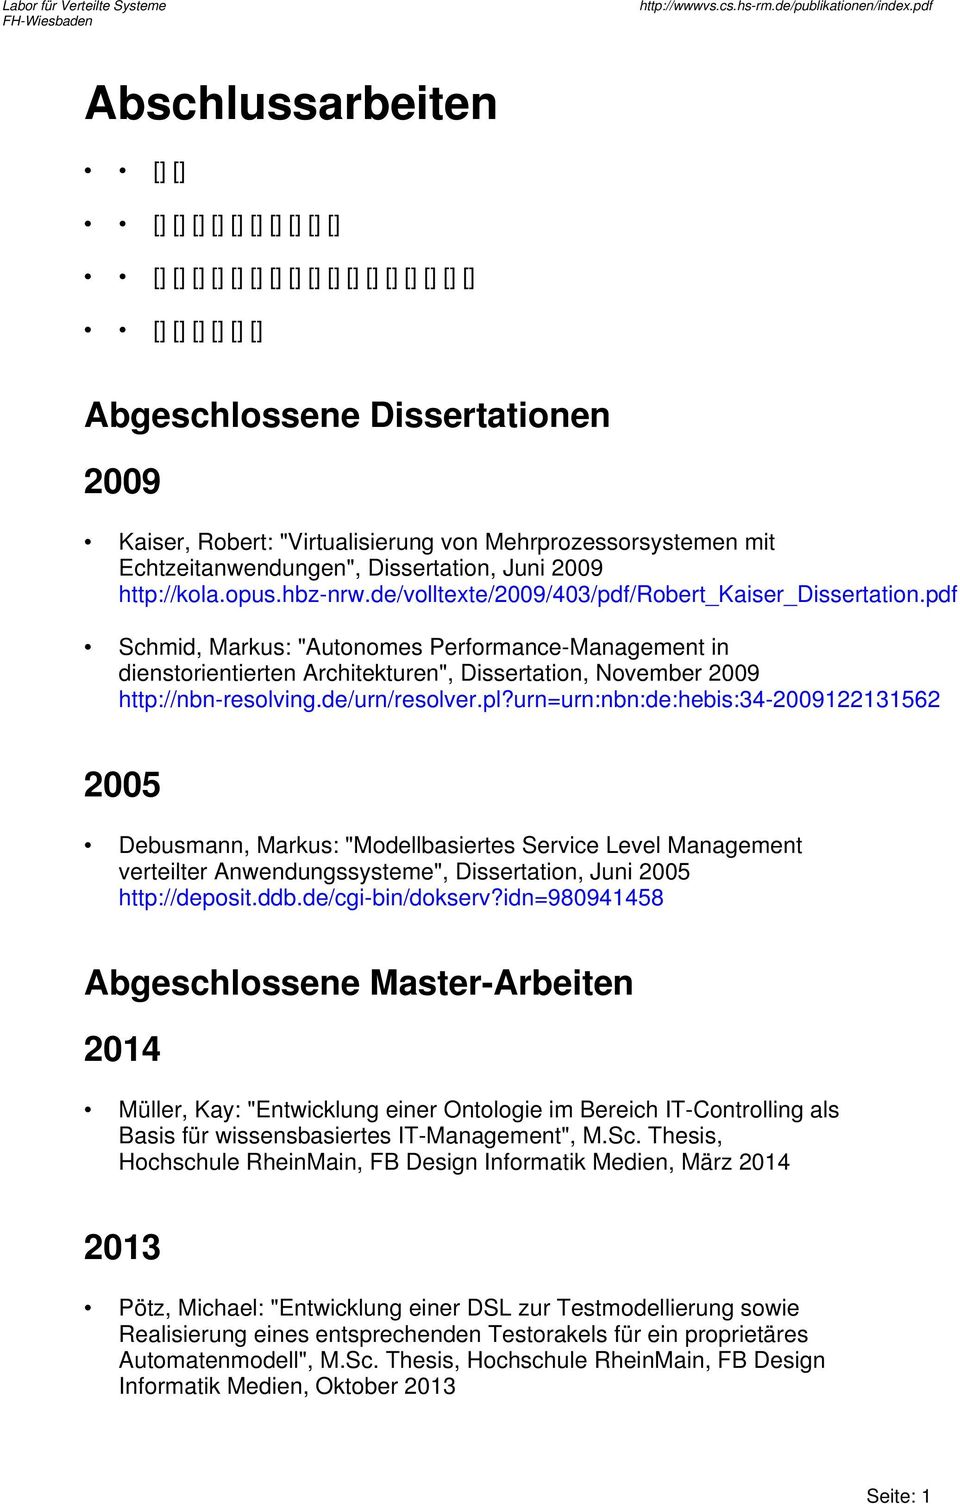 pdf Schmid, Markus: "Autonomes Performance-Management in dienstorientierten Architekturen", Dissertation, November 2009 http://nbn-resolving.de/urn/resolver.pl?